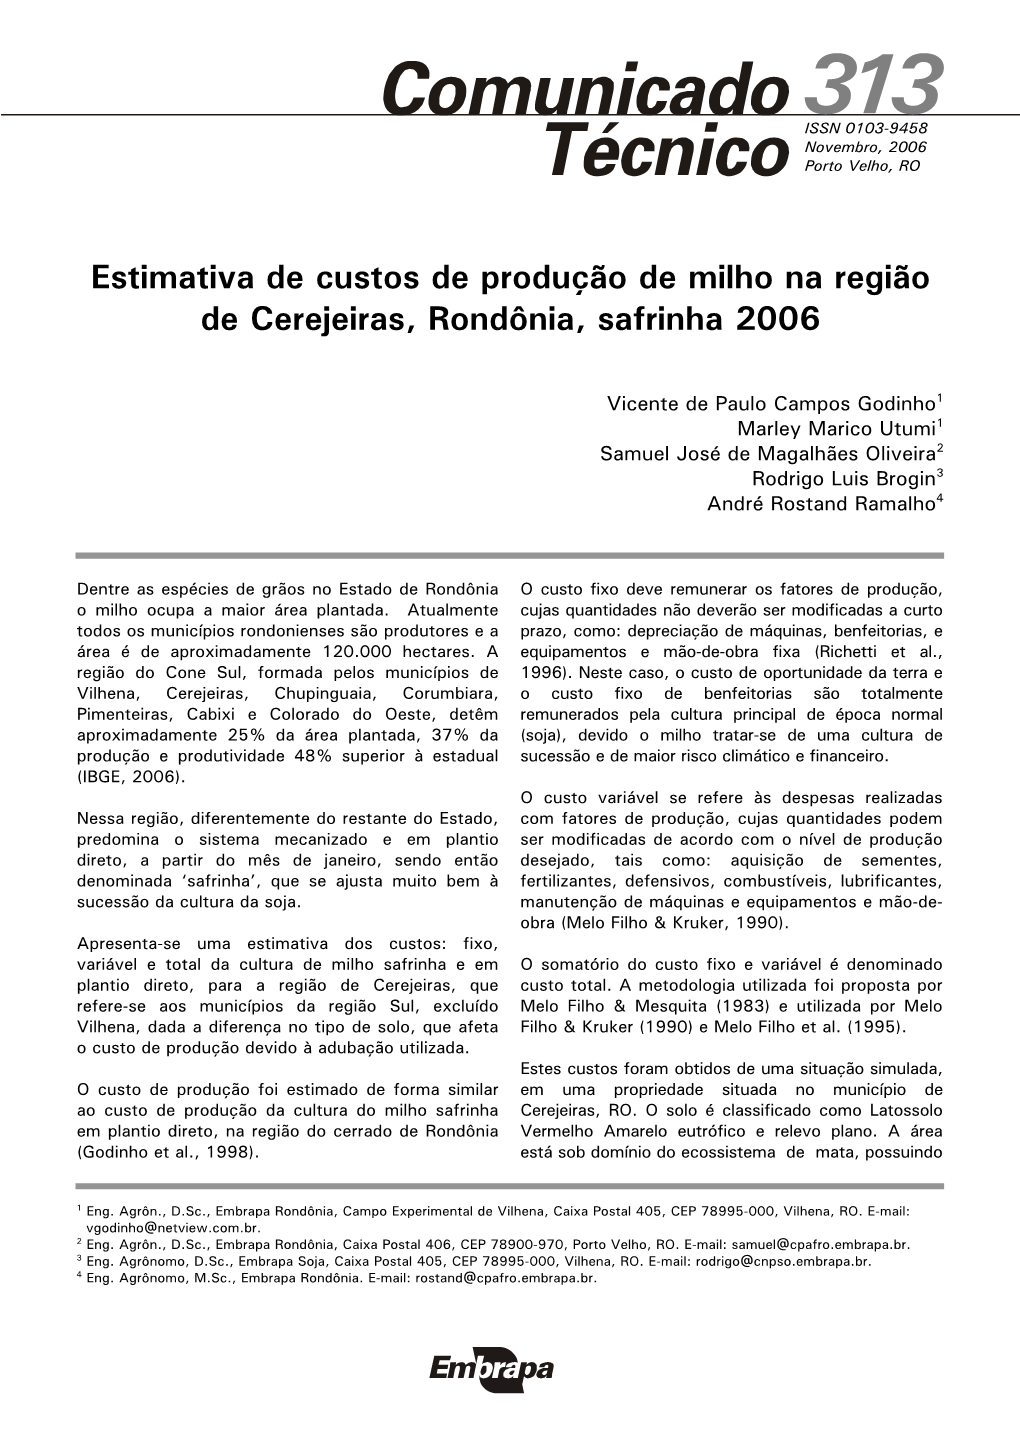 Estimativa De Custos De Produção De Milho Na Região De Cerejeiras, Rondônia, Safrinha 2006